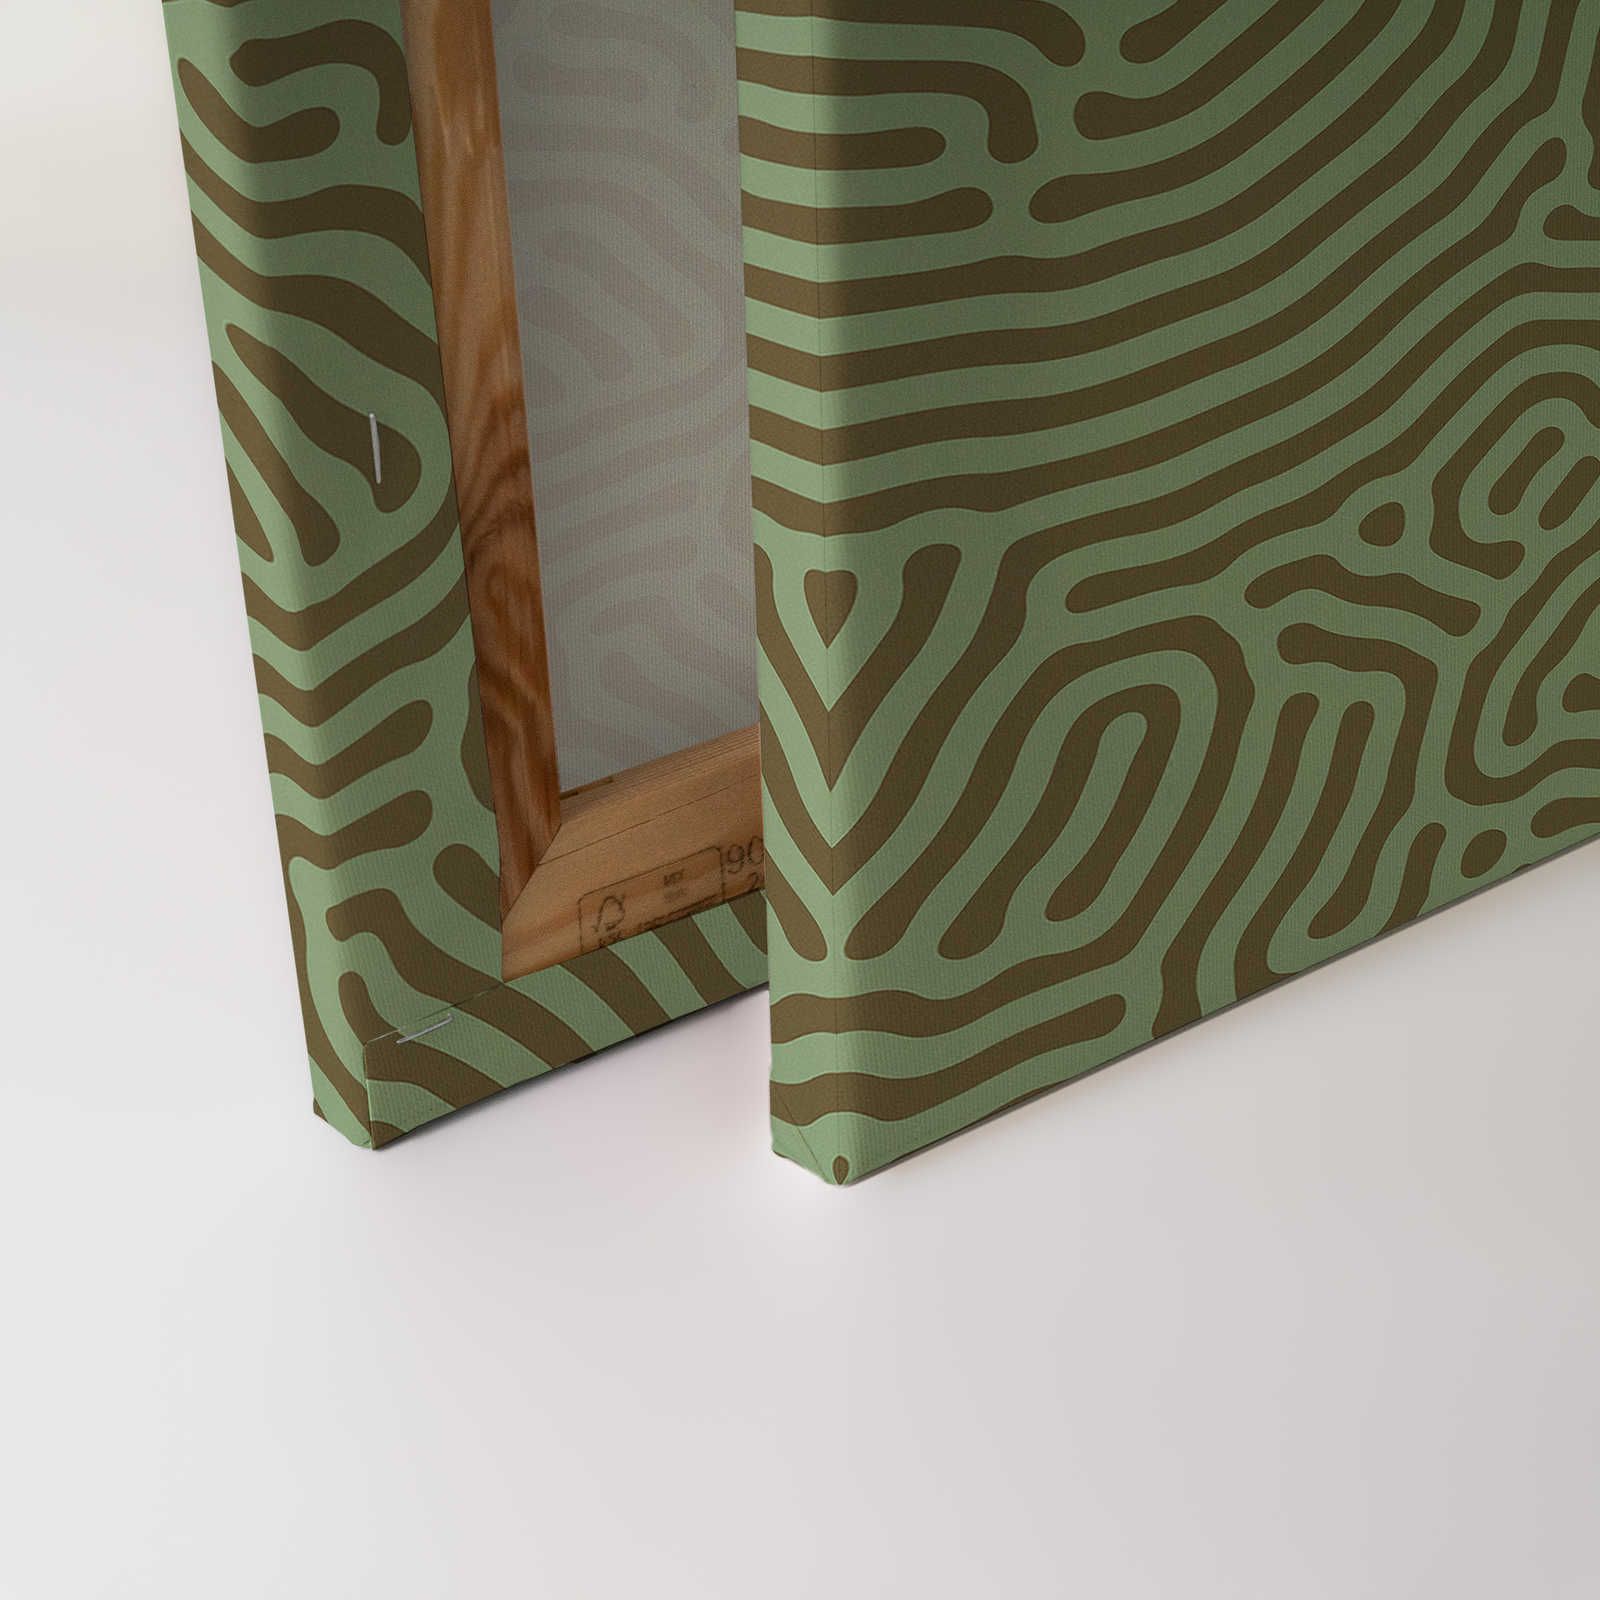             Sahel 1 - Grünes Leinwandbild Labyrinth Muster Salbeigrün – 0,90 m x 0,60 m
        